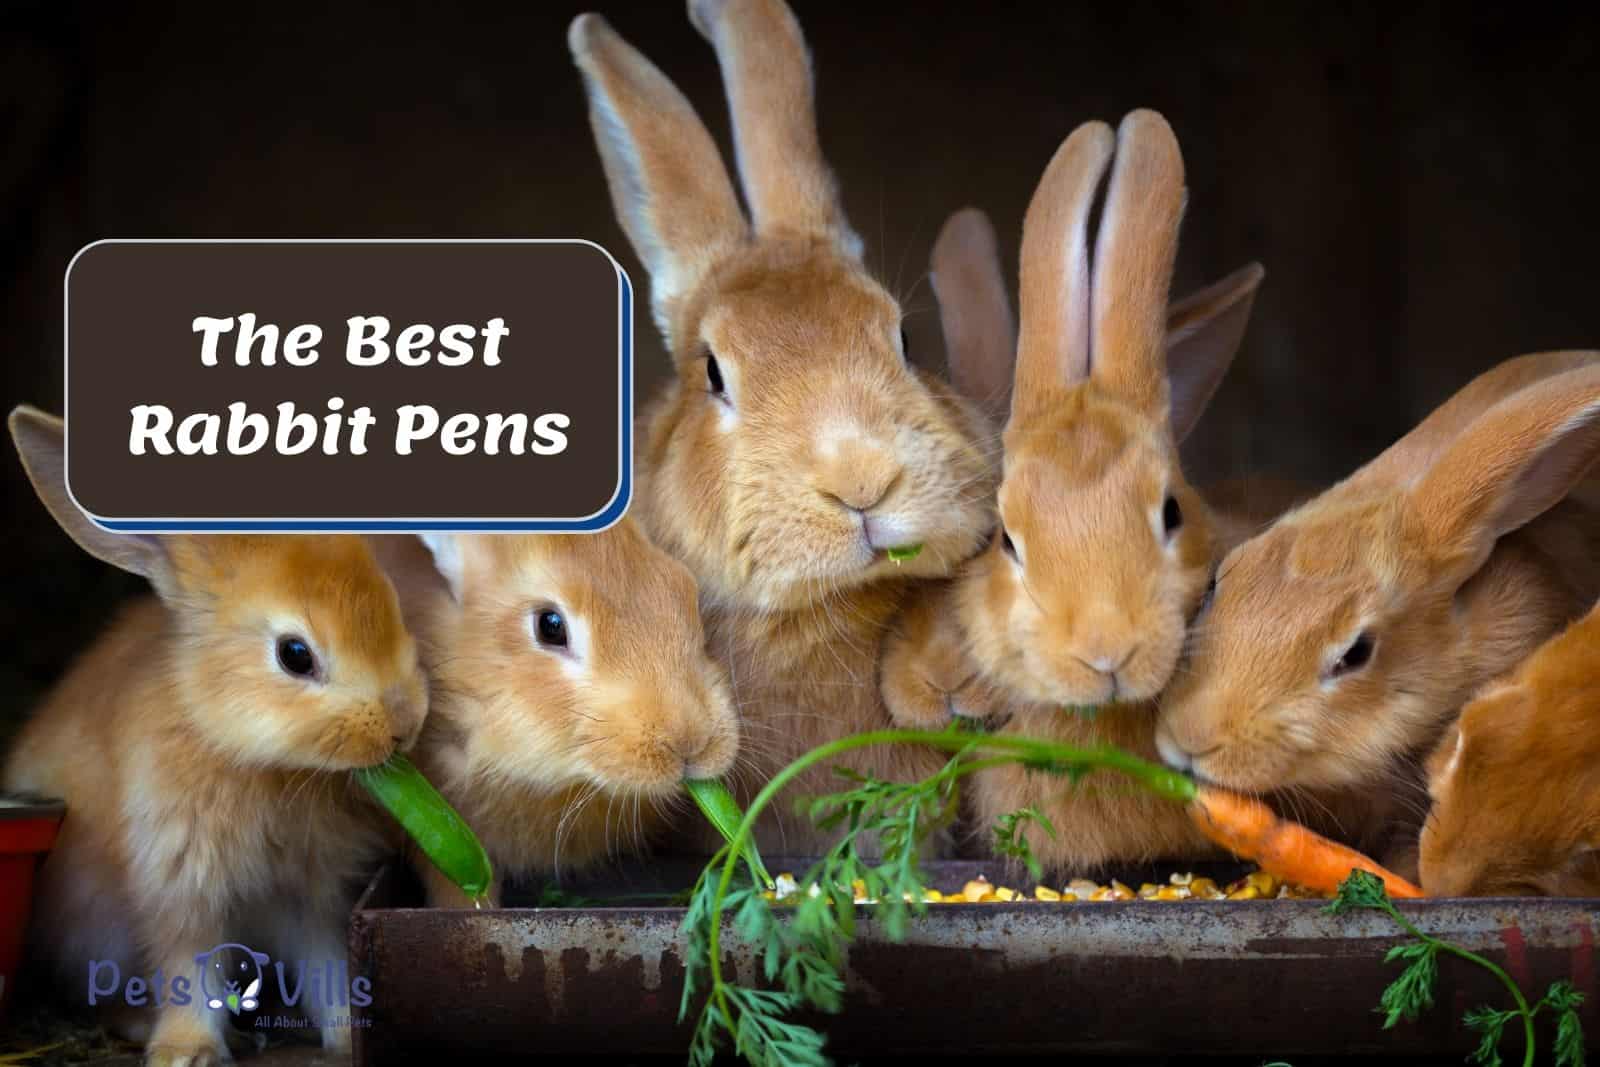 rabbits eating carrots inside their best rabbit pen